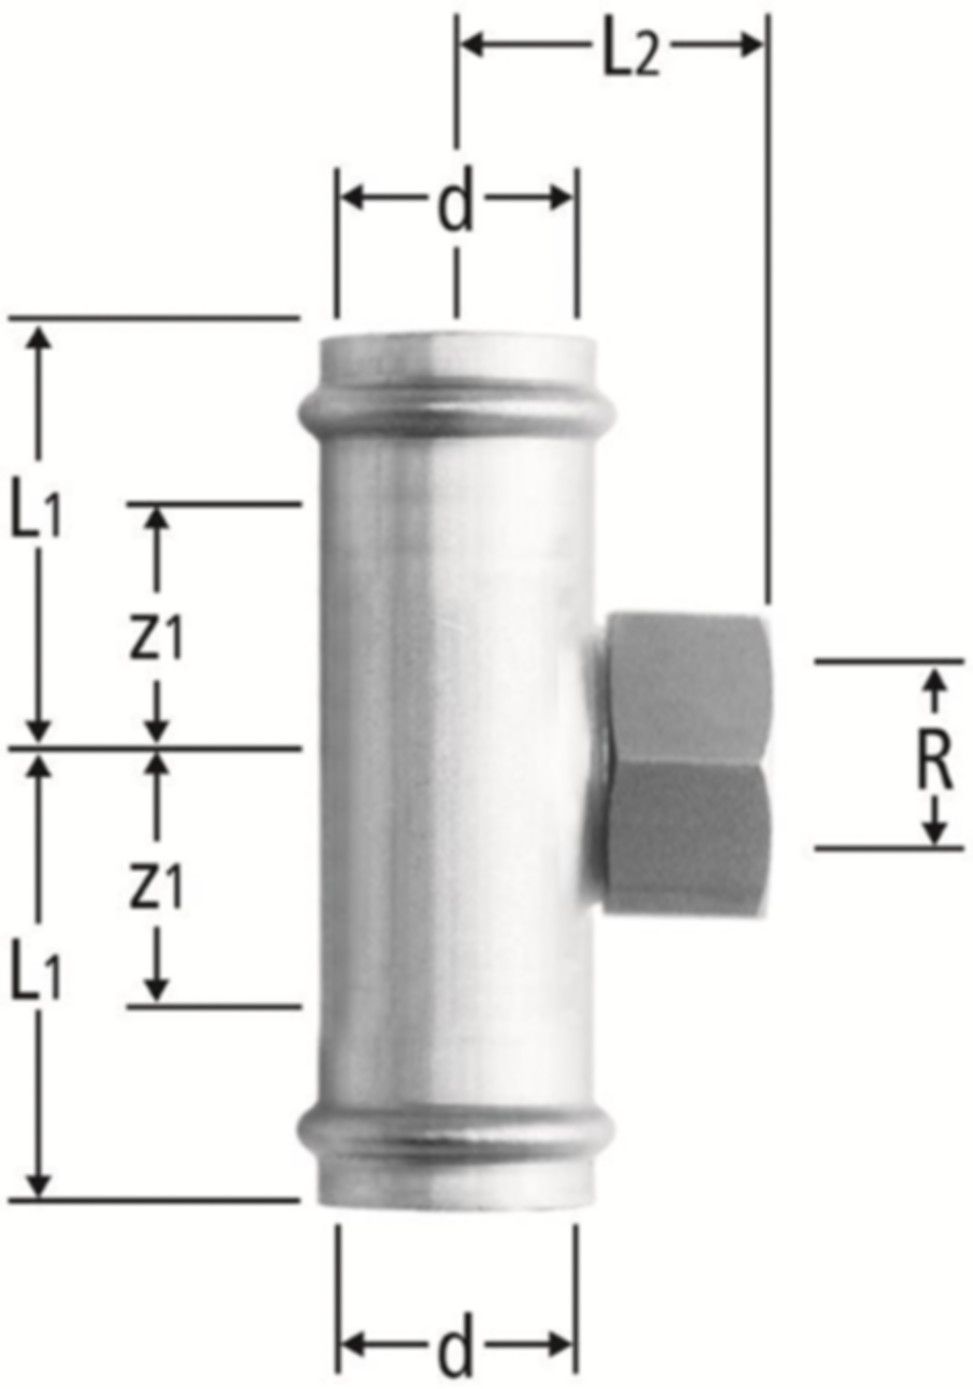 T-Stück m/IG 42 x 11/2" x 42 mm 80019.27 mit Schiebemuffe - Nussbaum-Optipress-Inox-Fittings